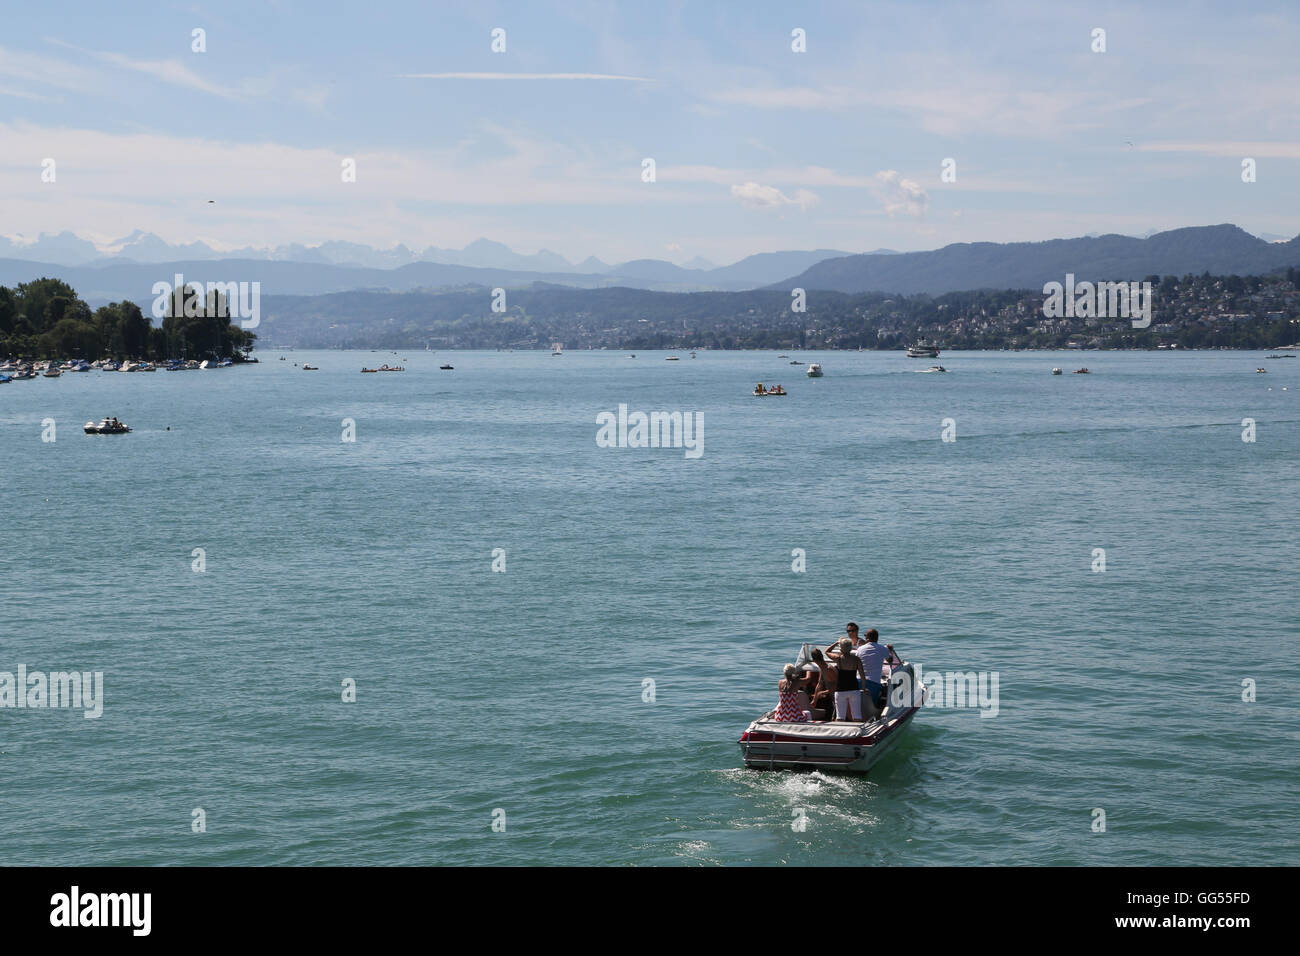 Un bateau fait son chemin à travers le lac de Zurich à Zurich, Suisse, avec les Alpes en toile de fond par une chaude journée d'été. Banque D'Images